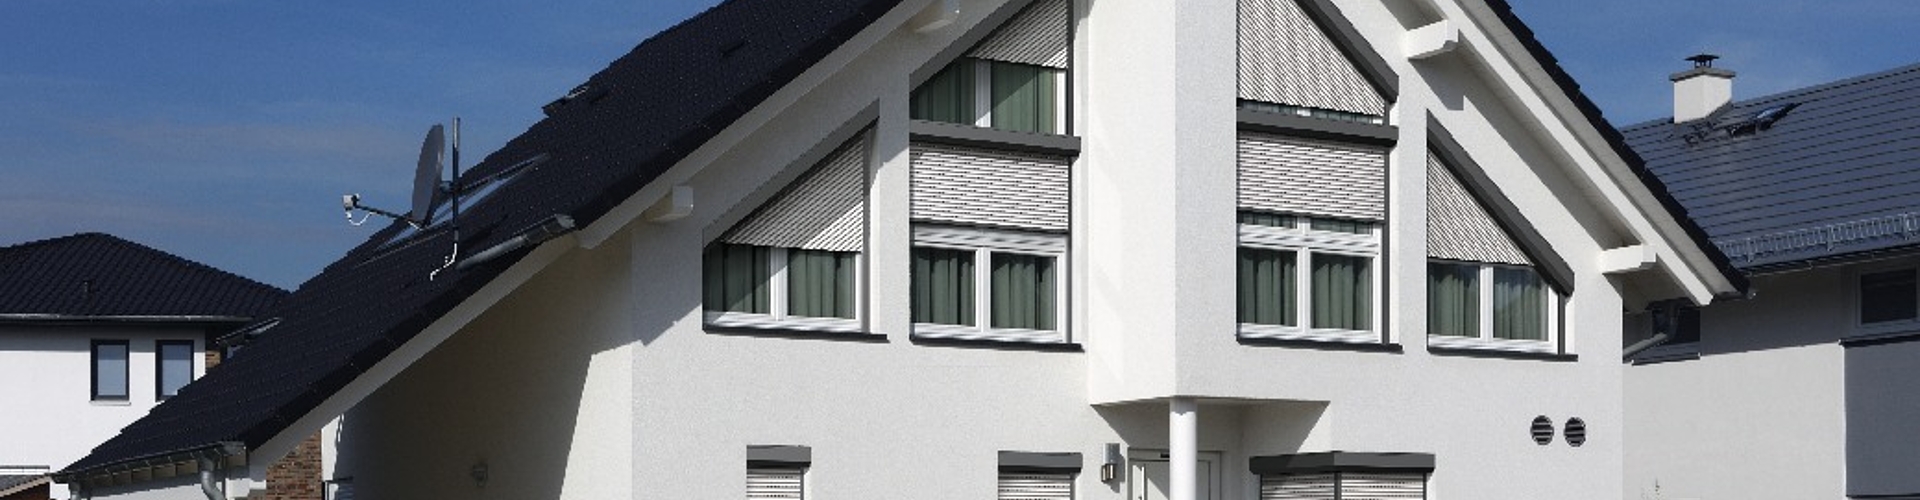 Frontansicht eines weißen Einfamilienhauses, mit einigen Rolladen und Schräg-Rolladen an den Fenstern